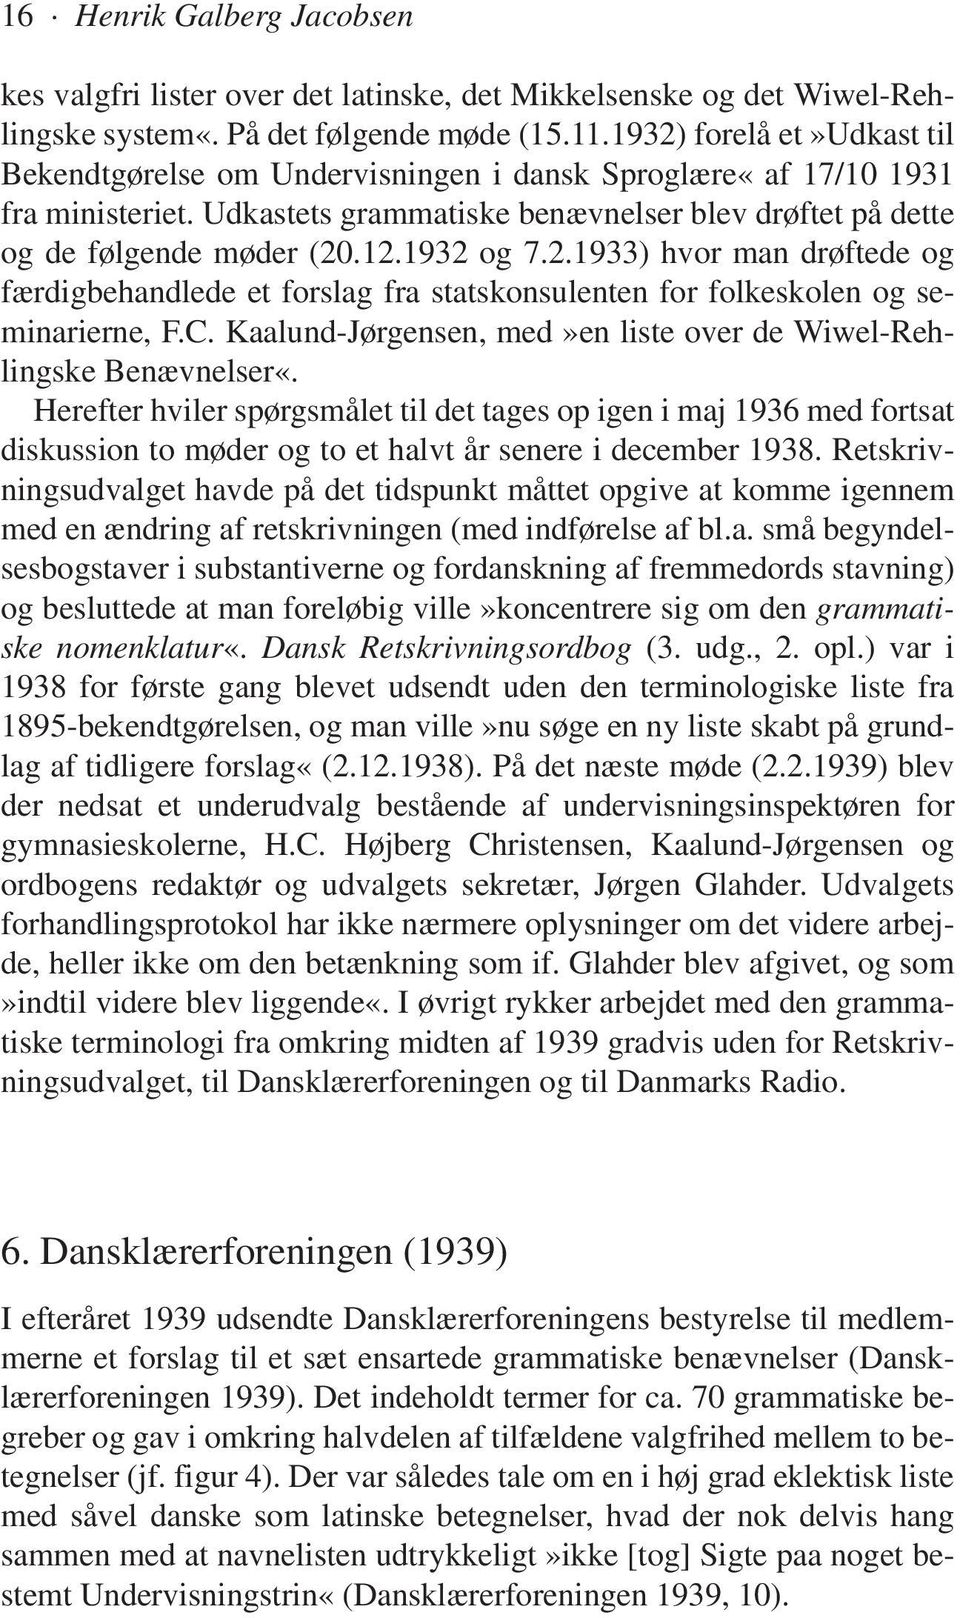 1932 og 7.2.1933) hvor man drøftede og færdigbehandlede et forslag fra statskonsulenten for folkeskolen og seminarierne, F.C. Kaalund-Jørgensen, med»en liste over de Wiwel-Rehlingske Benævnelser«.